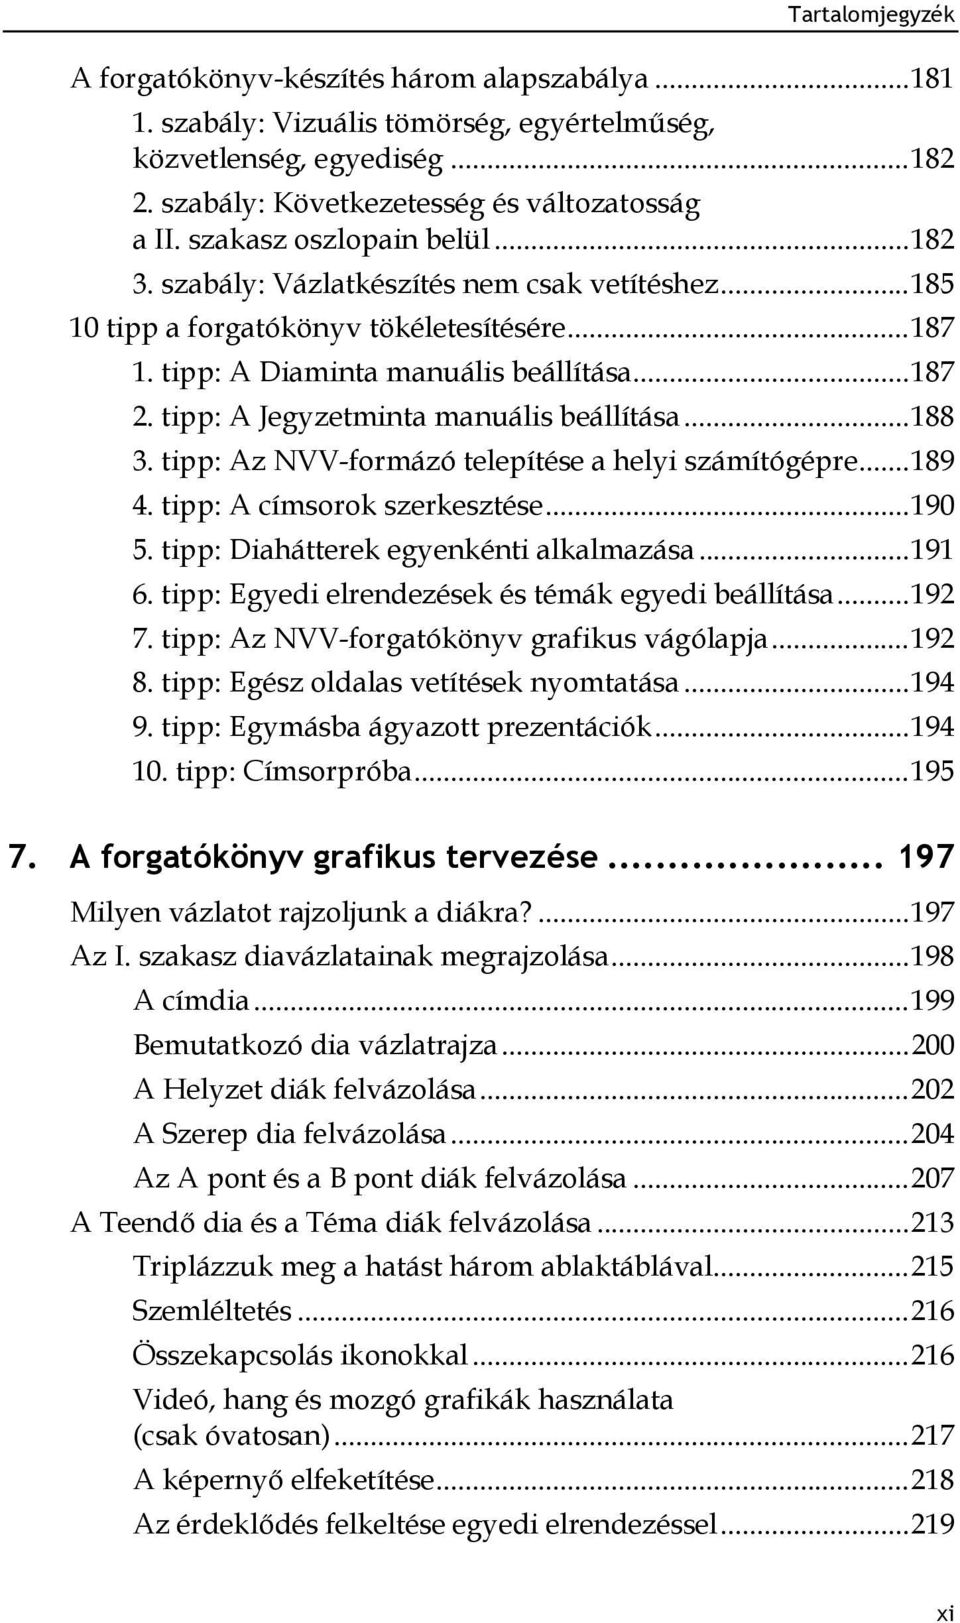 tipp: A Jegyzetminta manuális beállítása... 188 3. tipp: Az NVV-formázó telepítése a helyi számítógépre... 189 4. tipp: A címsorok szerkesztése... 190 5. tipp: Diahátterek egyenkénti alkalmazása.